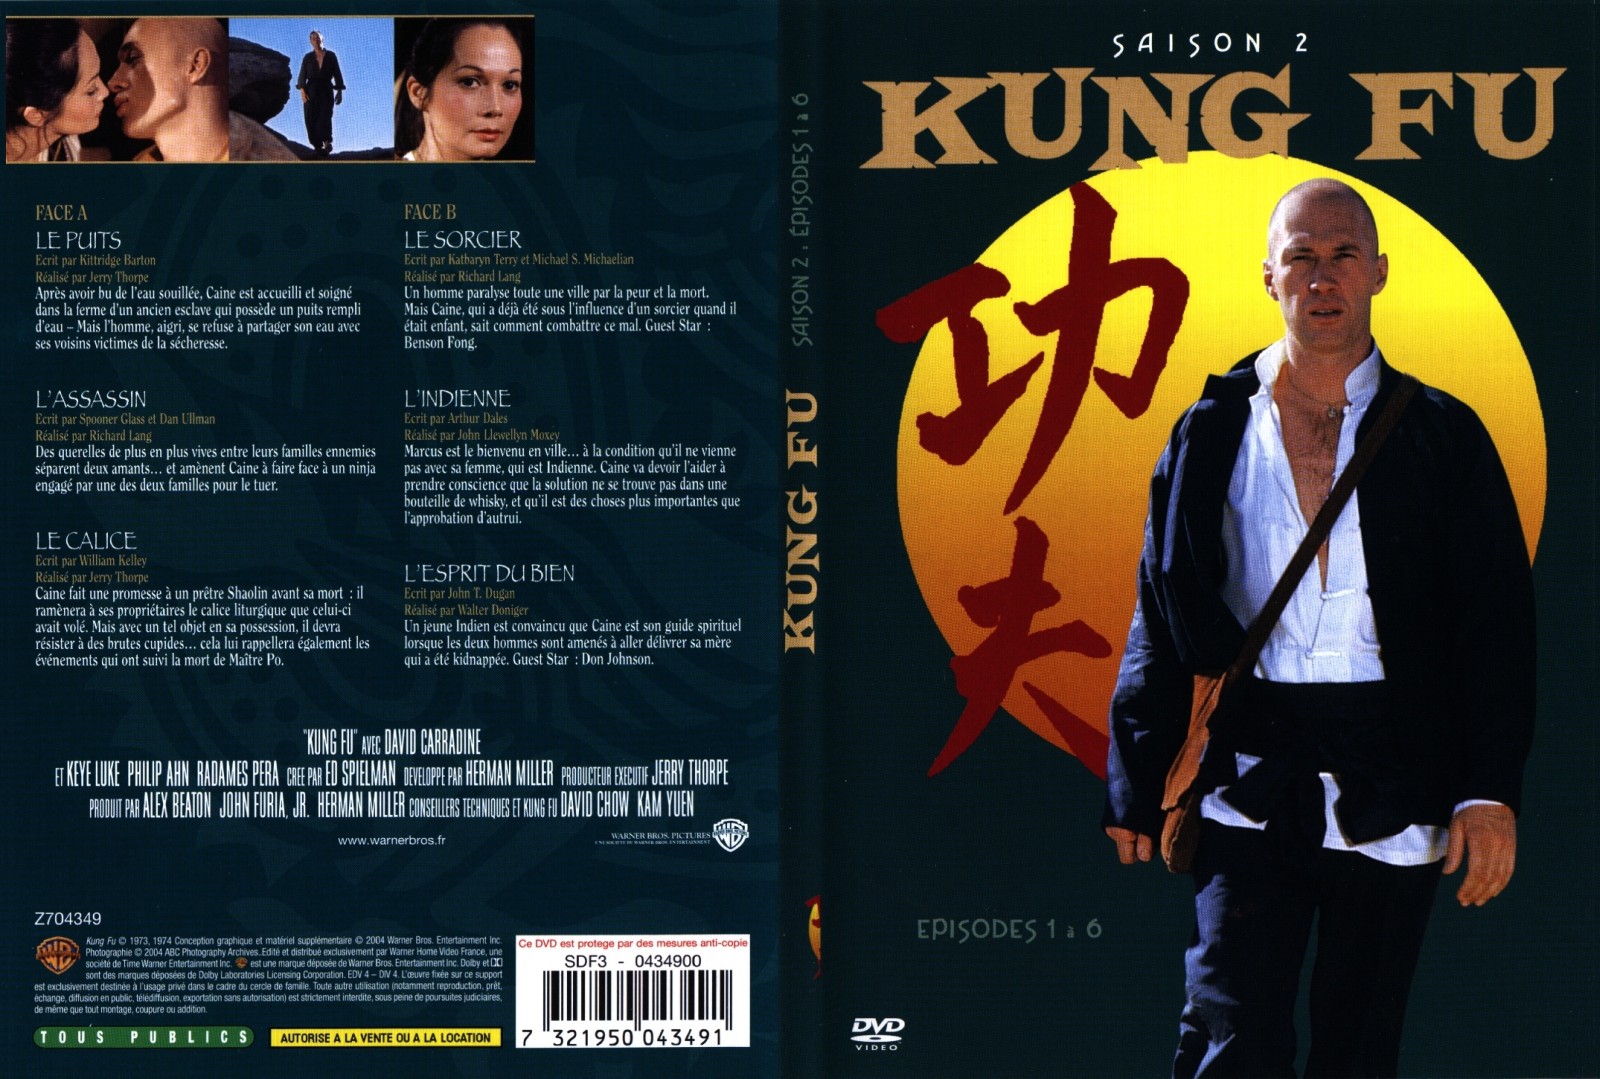 Jaquette DVD Kung fu saison 2 vol 1 - SLIM